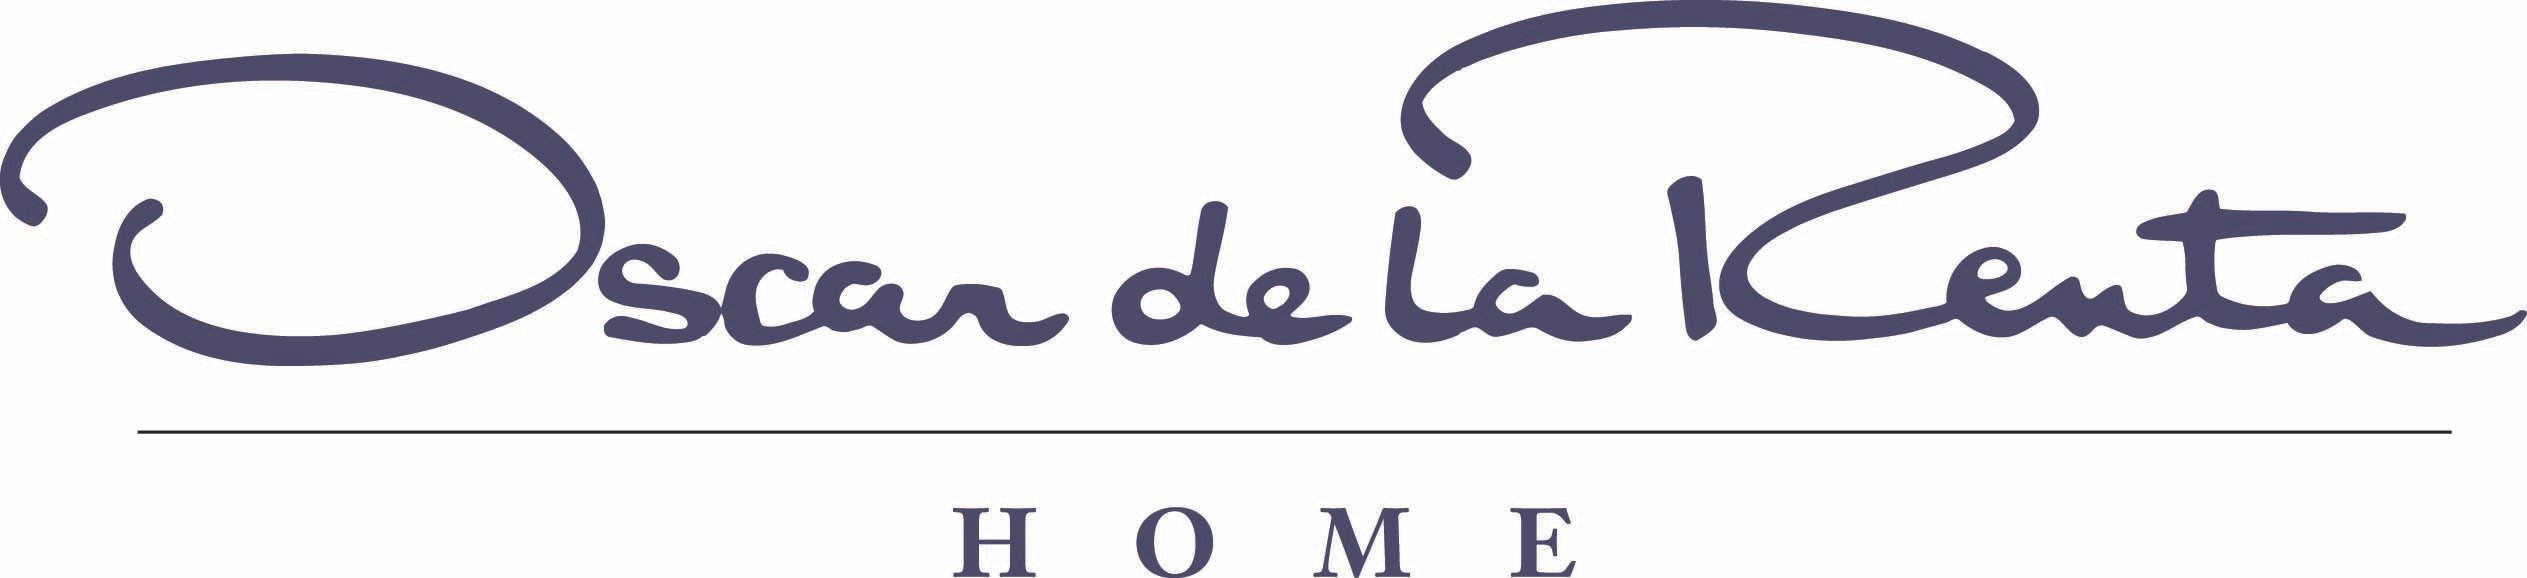 Oscar De La Renta Logo - Oscar de la Renta Home for Lee Jofa